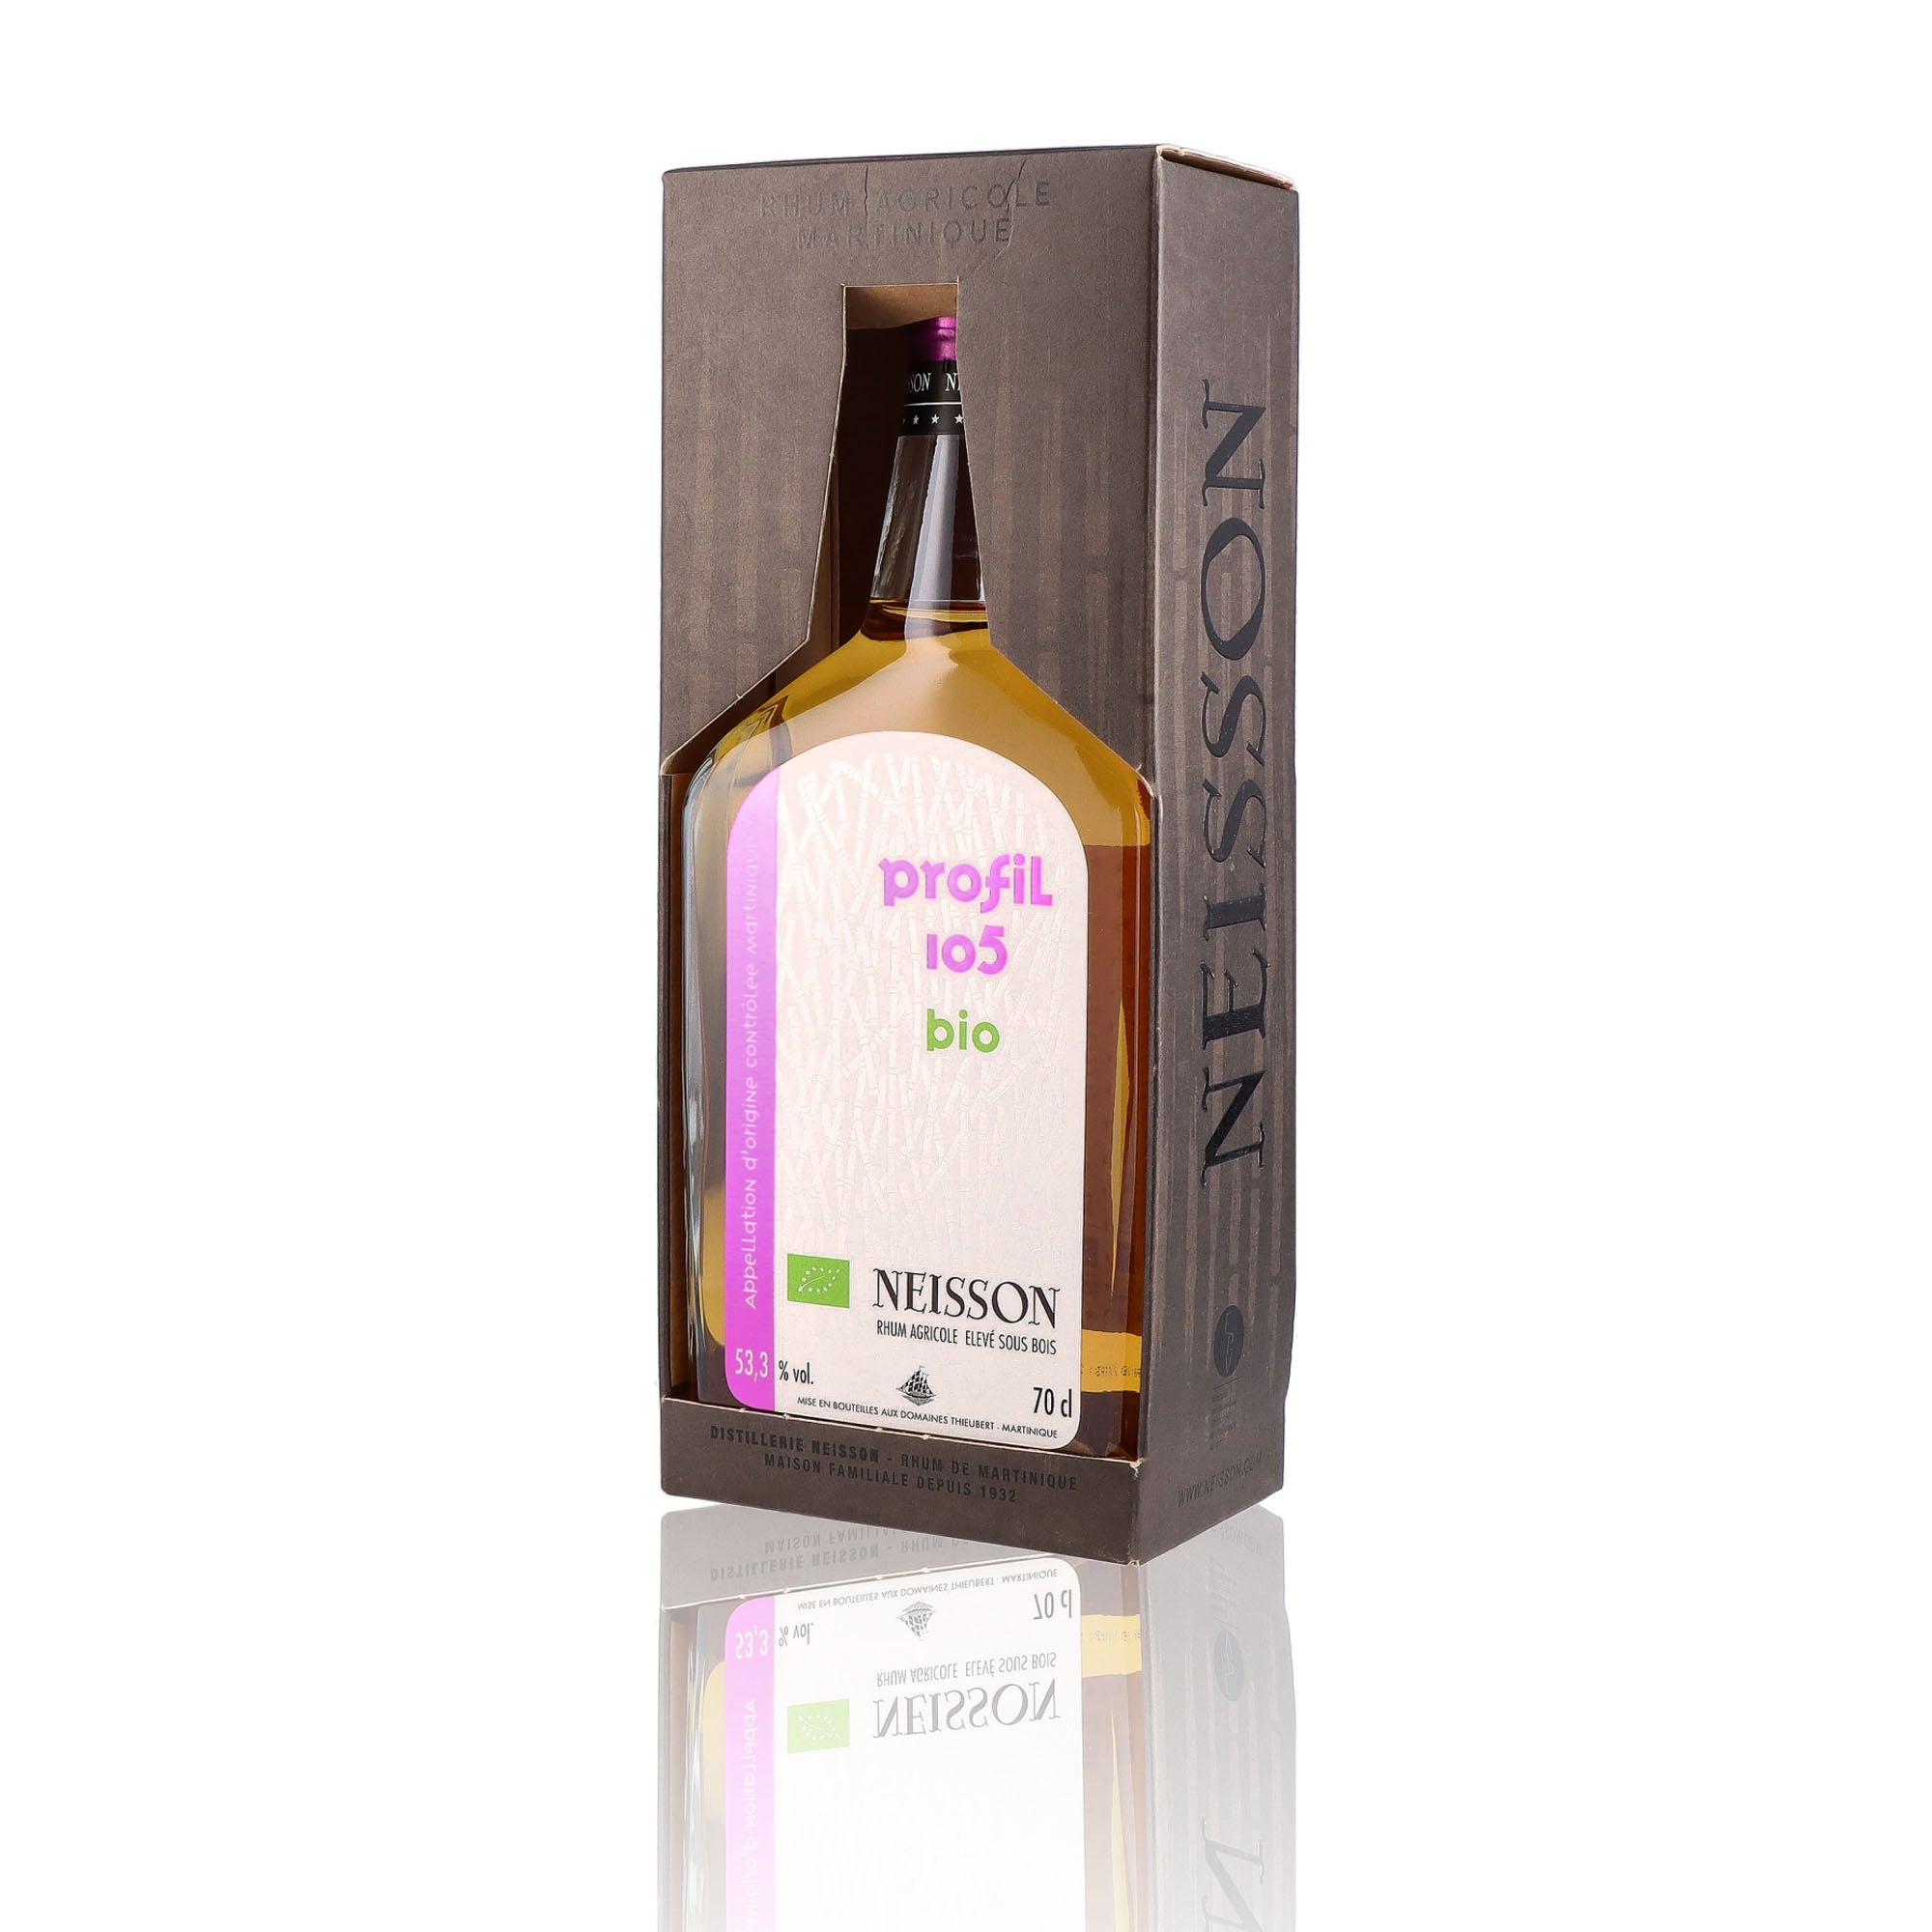 Une bouteille de rhum agricole, de la marque Neisson, Nommée profil 105 Bio.